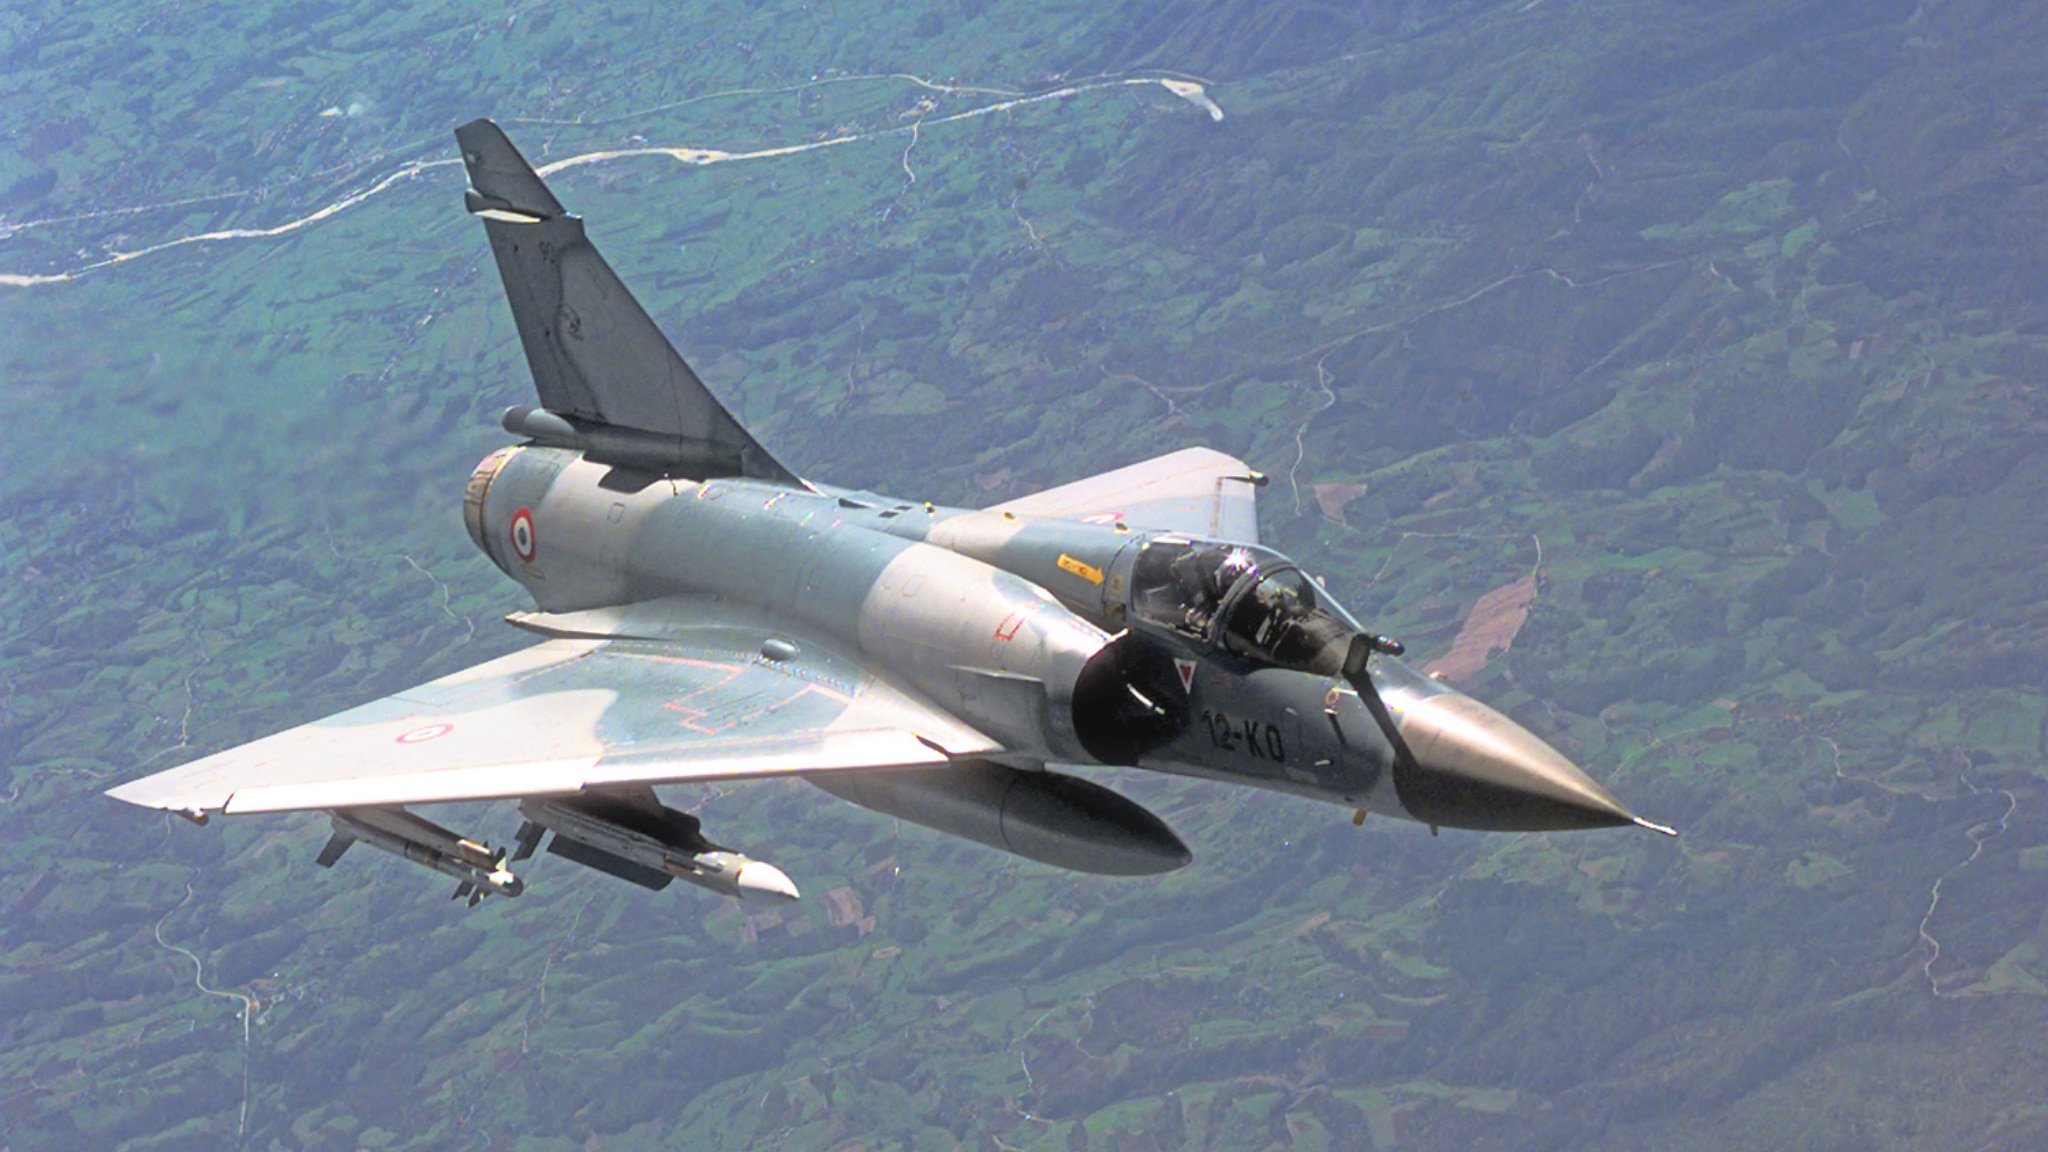 Aereo rubato in Italia sorvola la base militare di Tolone ed è intercettato da un Mirage 2000